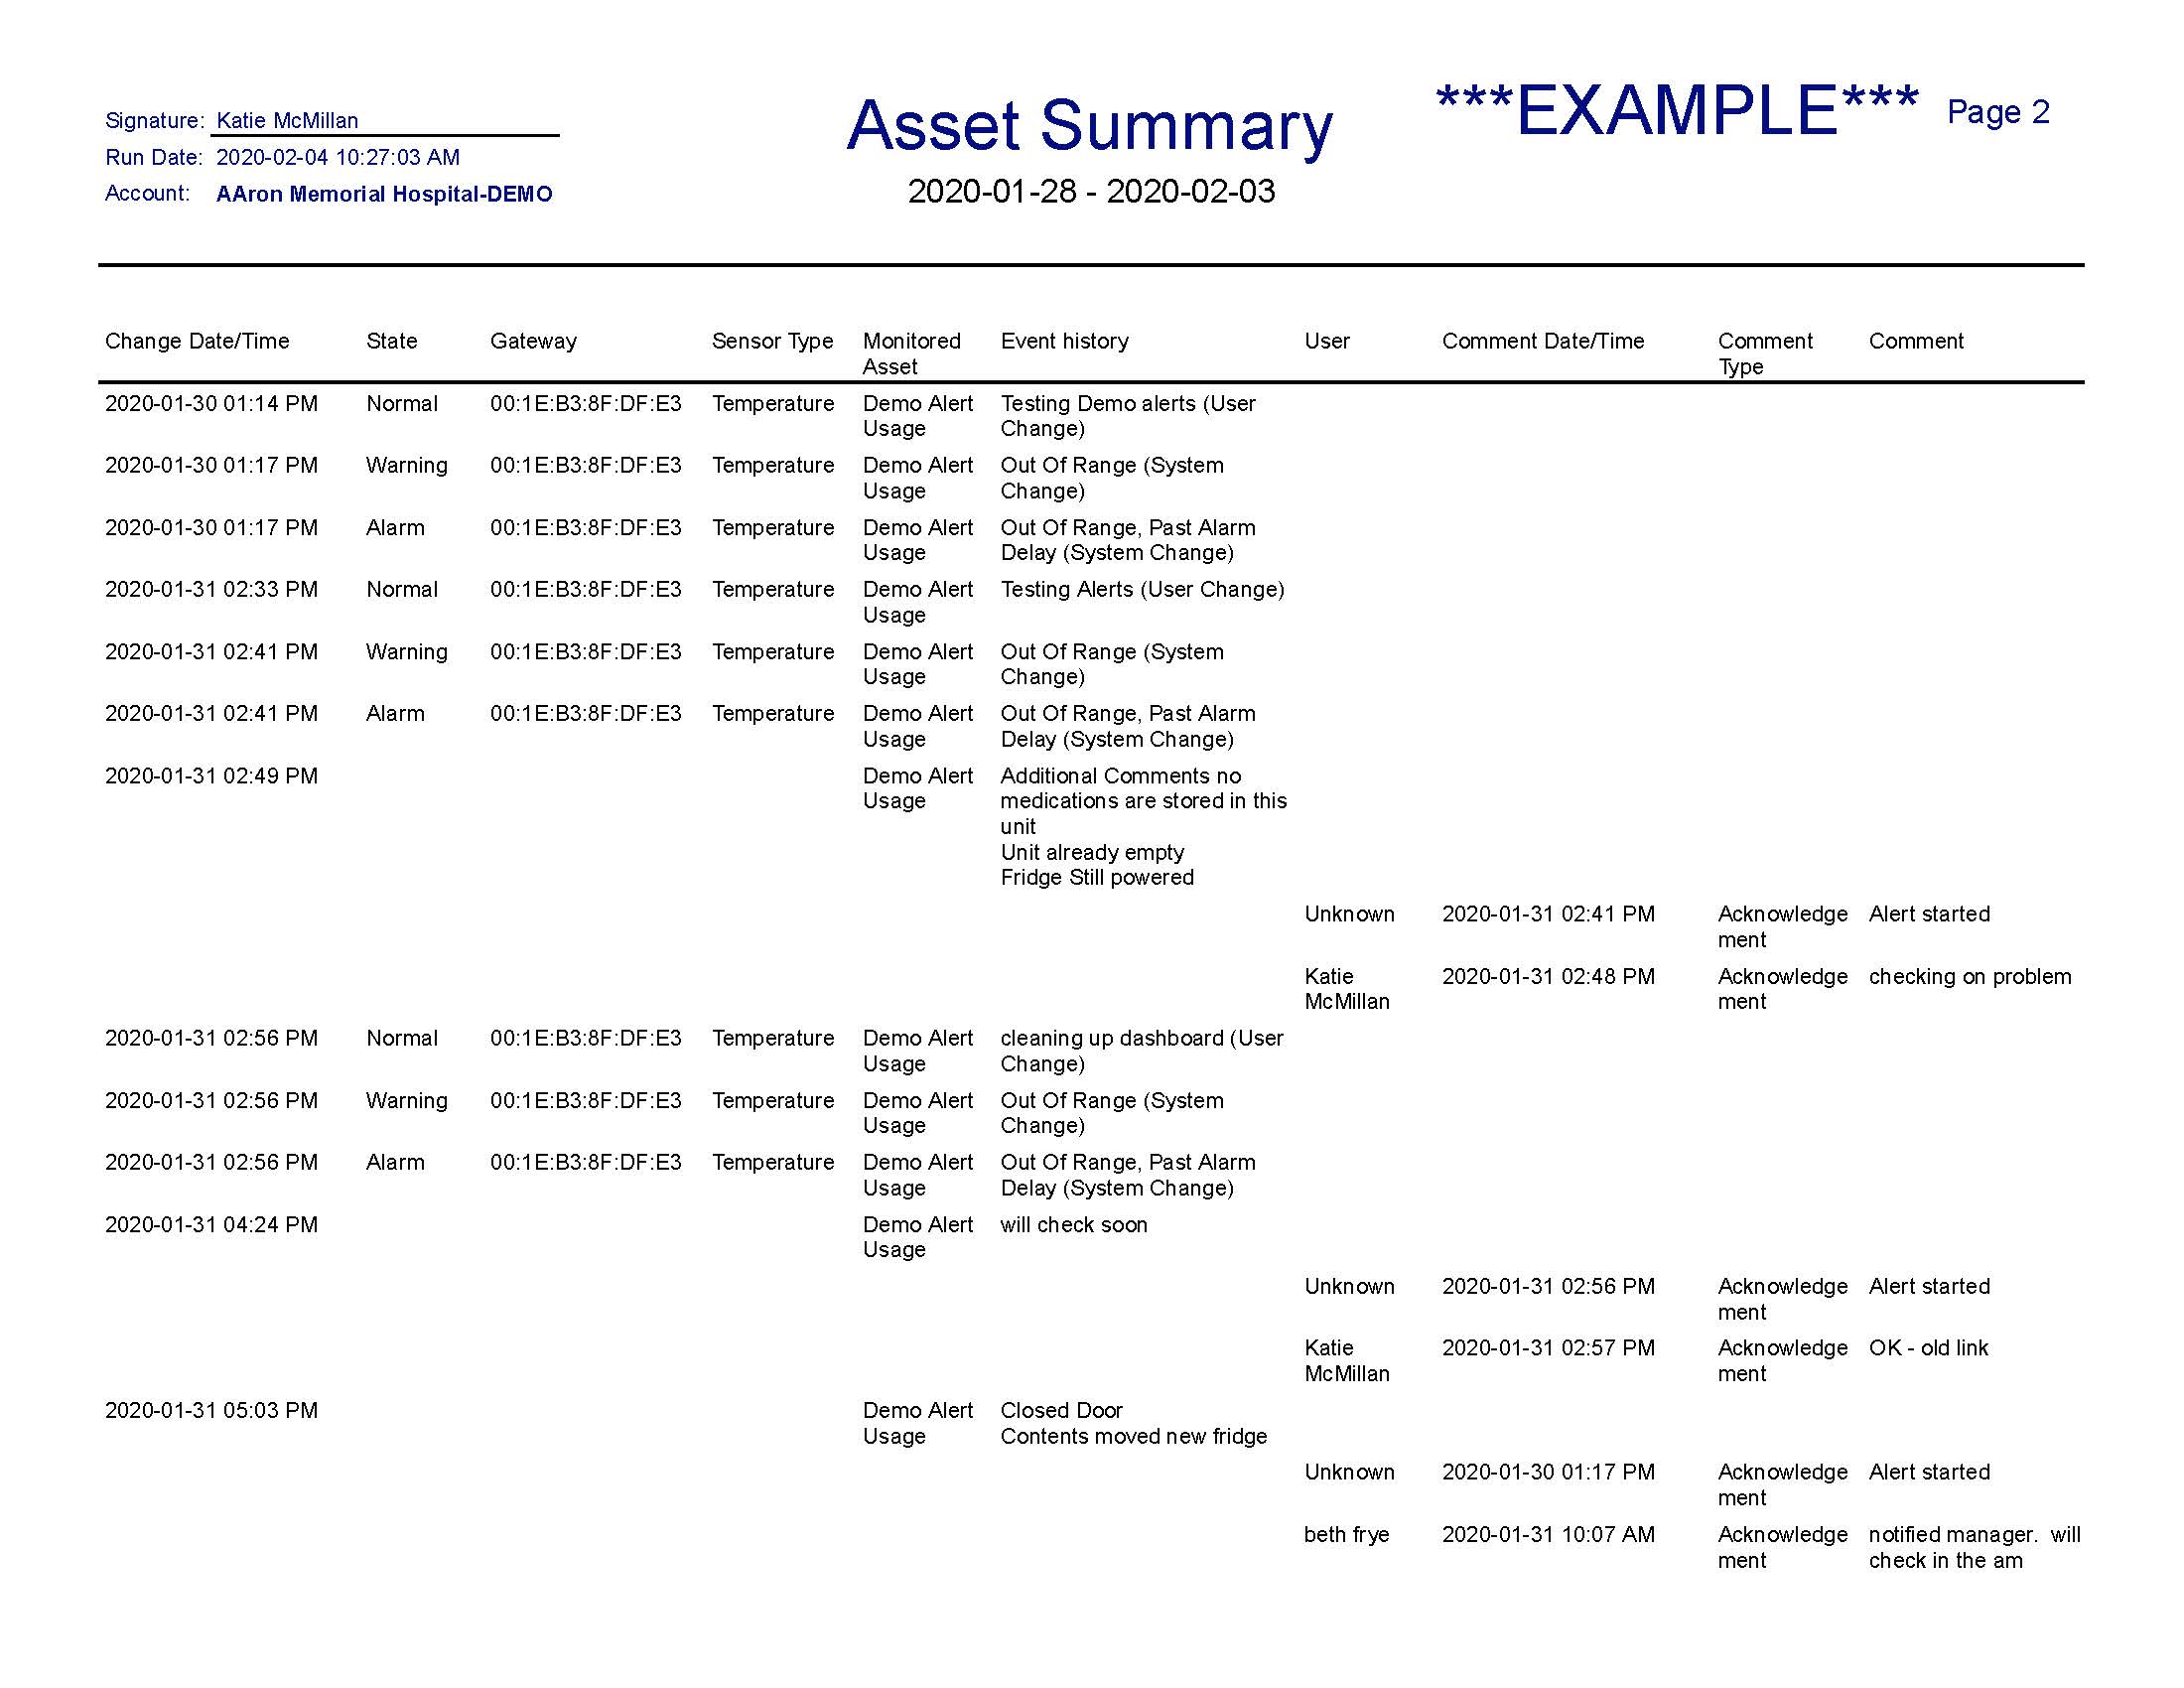 sense-asset-summary-report_Page_2.jpg